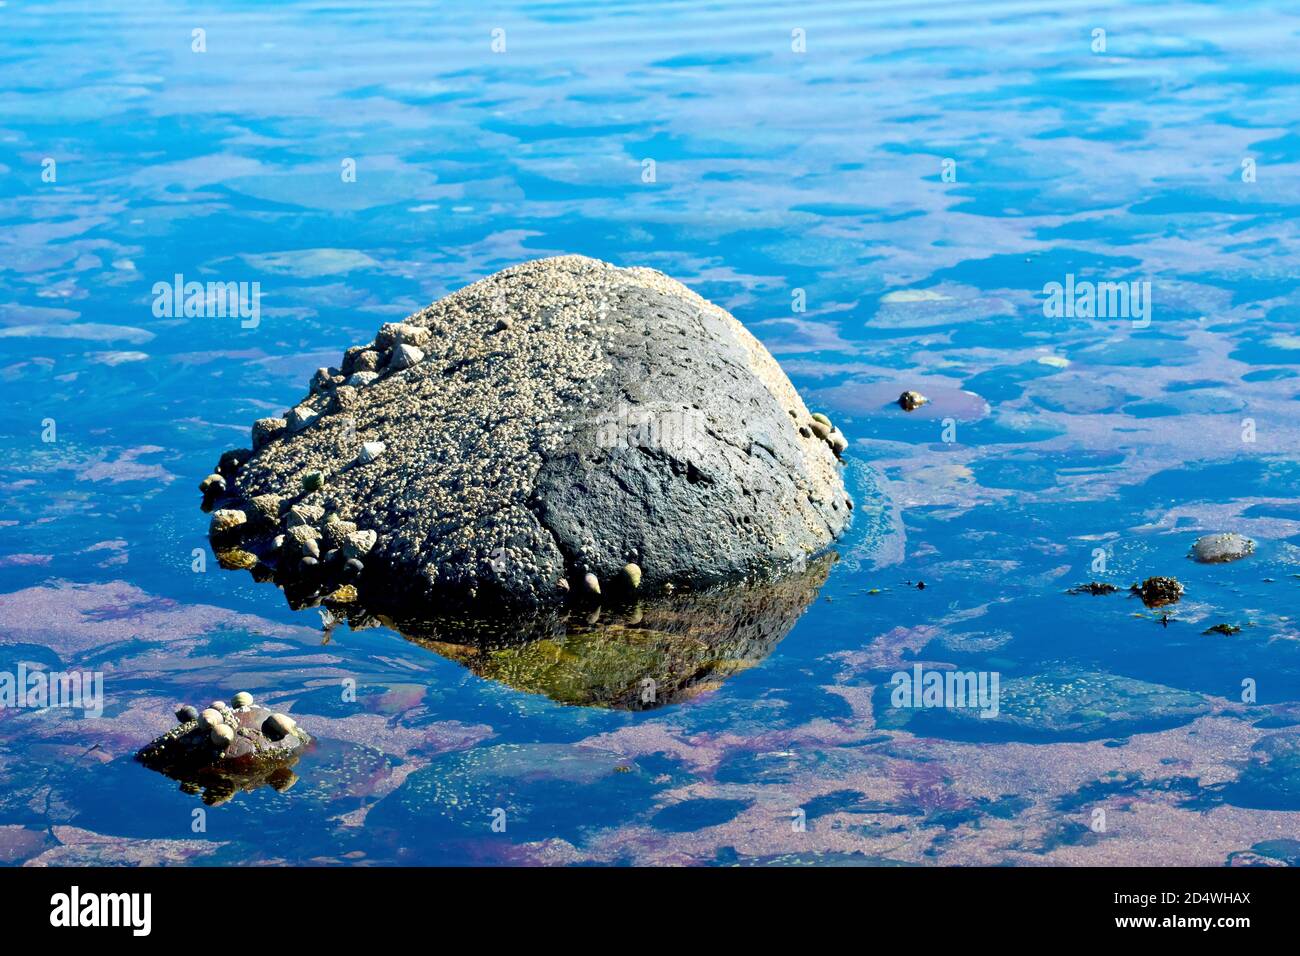 Ein schwarzer Felsen, übersät mit Seepocken und Limetten, sitzt in der Mitte eines Felsenpools am Strand, der blaue Himmel spiegelt sich im Wasser. Stockfoto